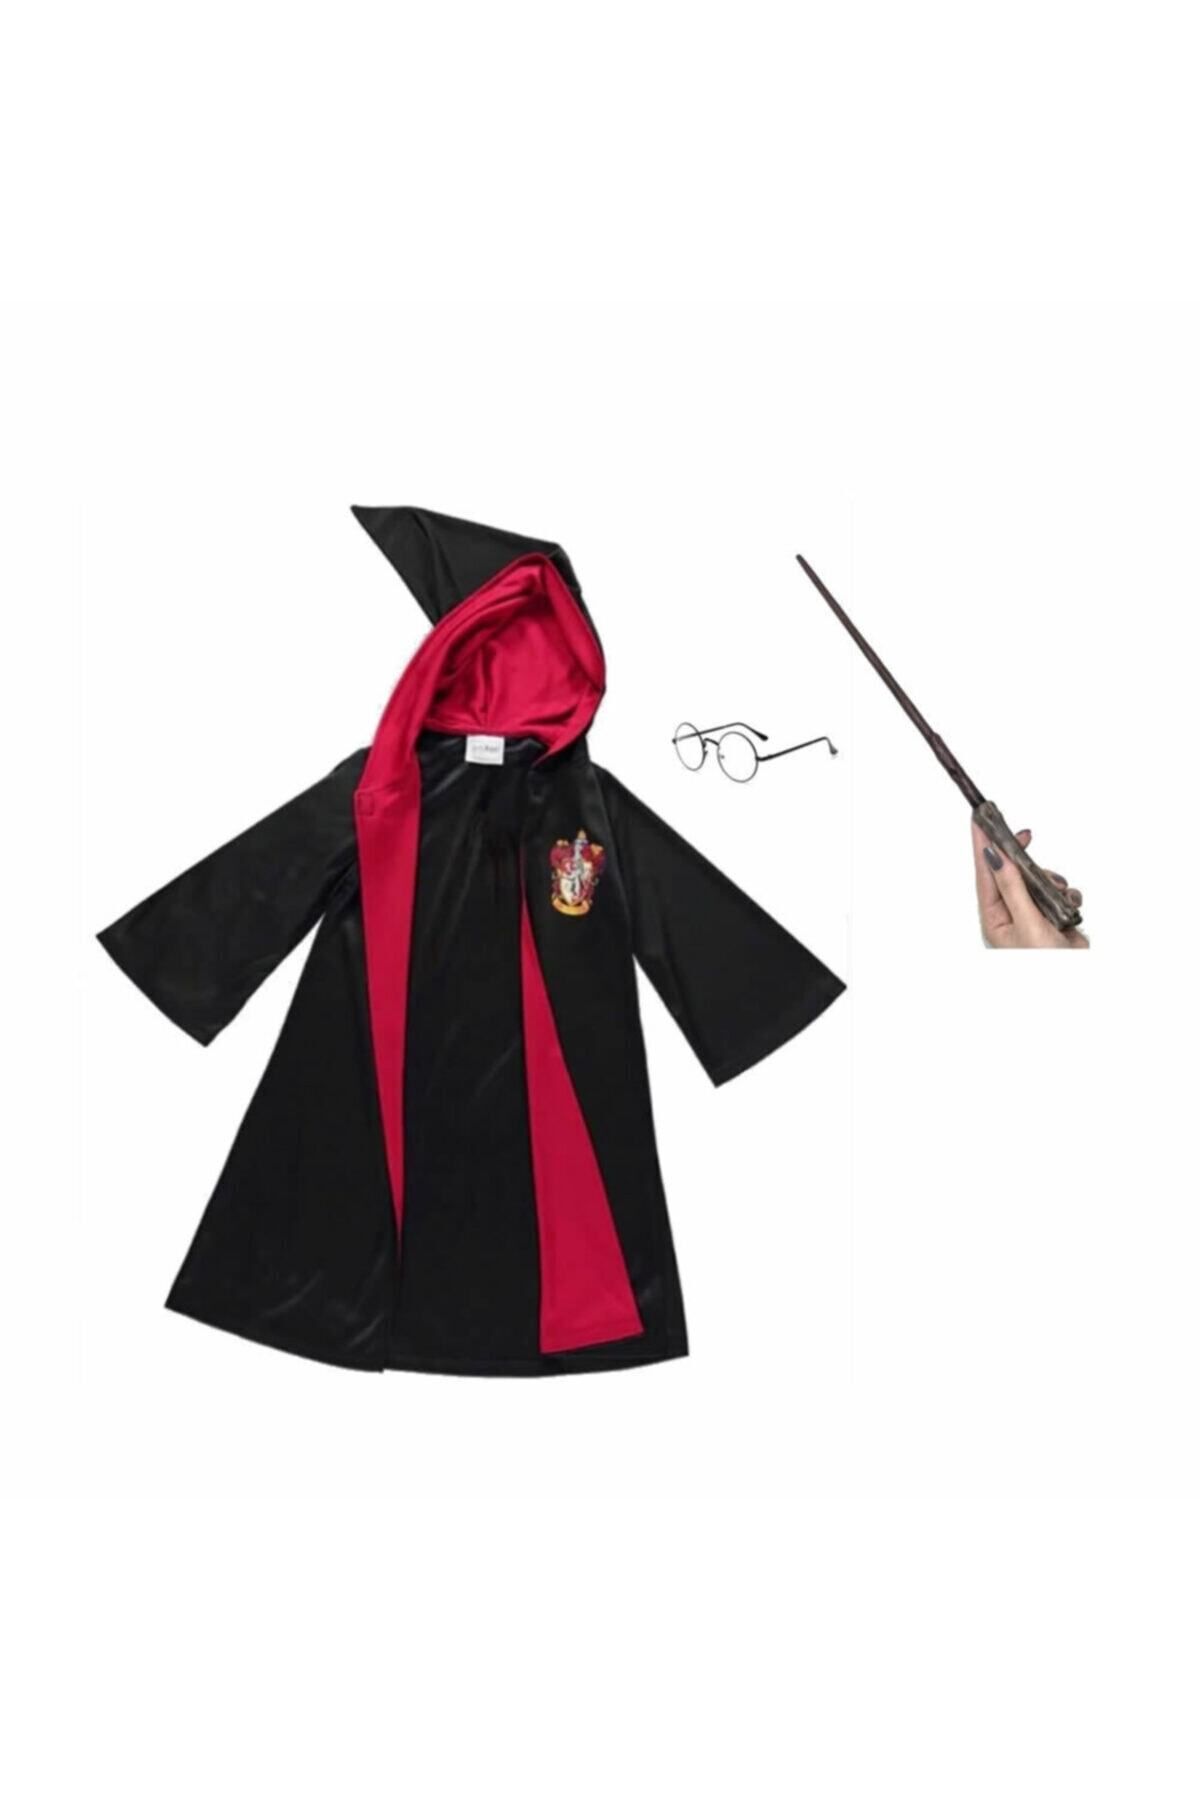 Harry Potter Pelerin Gryffindor Kostüm Cübbe, Asa, Gözlük